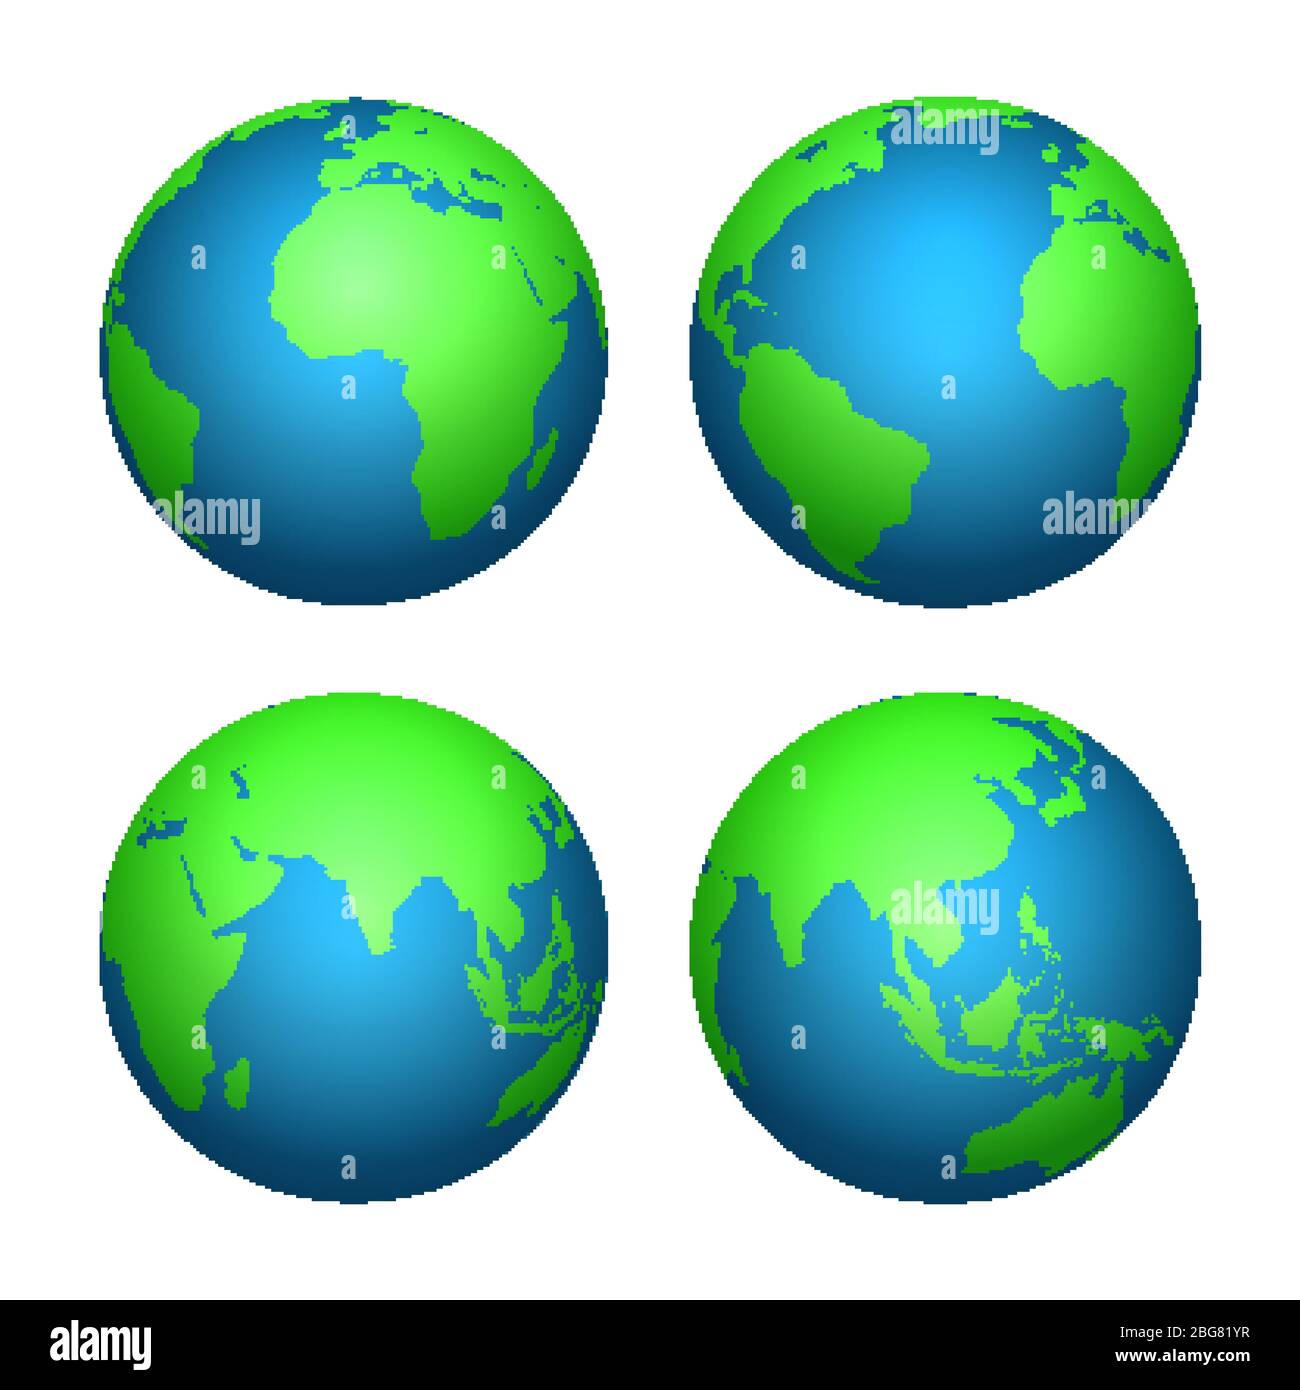 Erde 3d Globus. Weltkarte mit grünen Kontinenten und blauen Ozeanen. Vektor  isoliert Set von Erde Planeten, Weltkugel mit Kontinent Abbildung  Stock-Vektorgrafik - Alamy